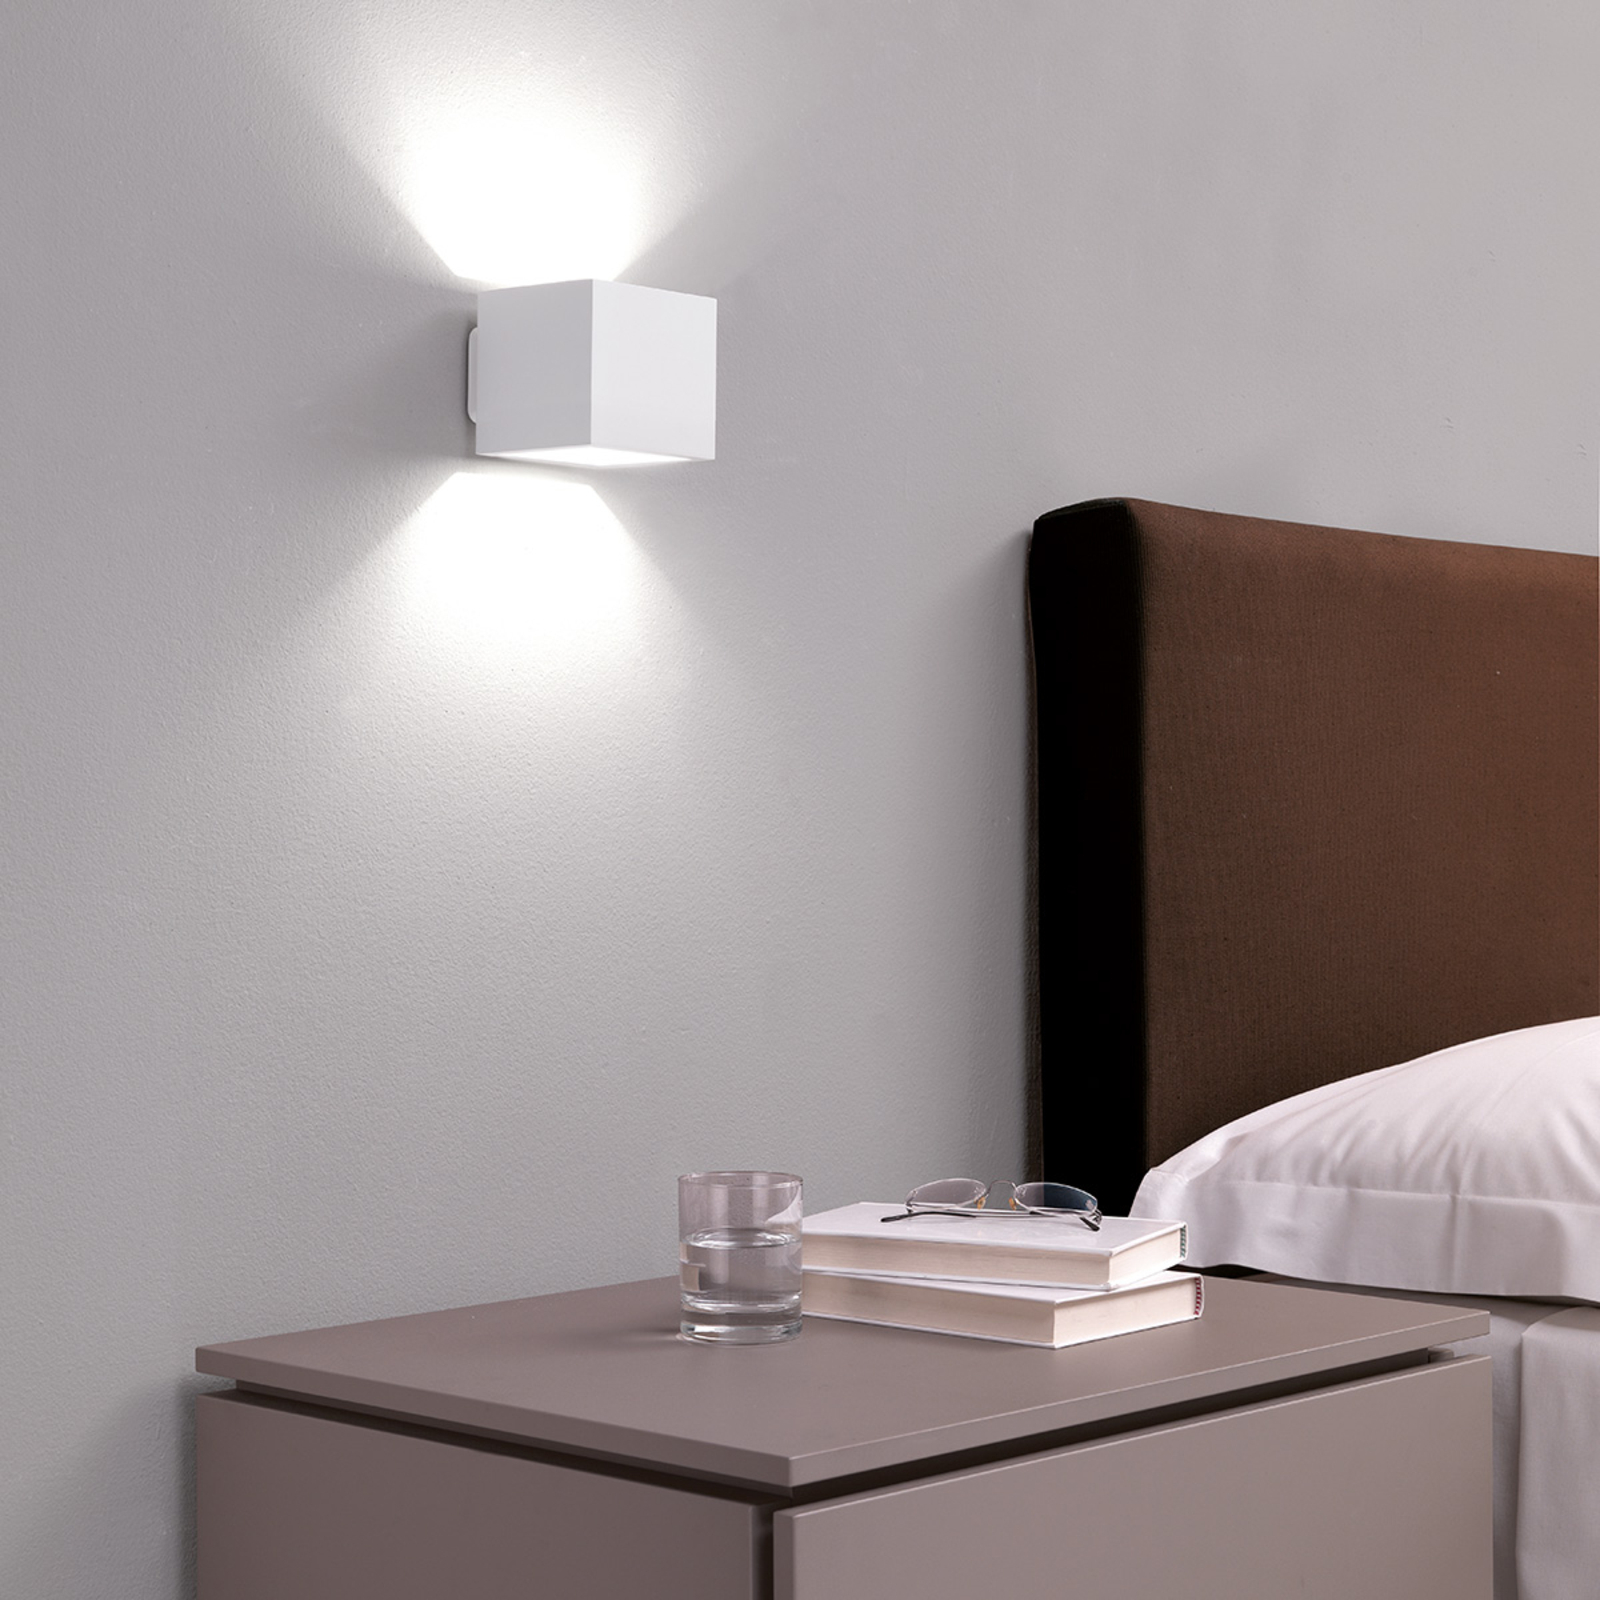 ICONE Cubò LED-es fali lámpa, 10 W, fehér színű